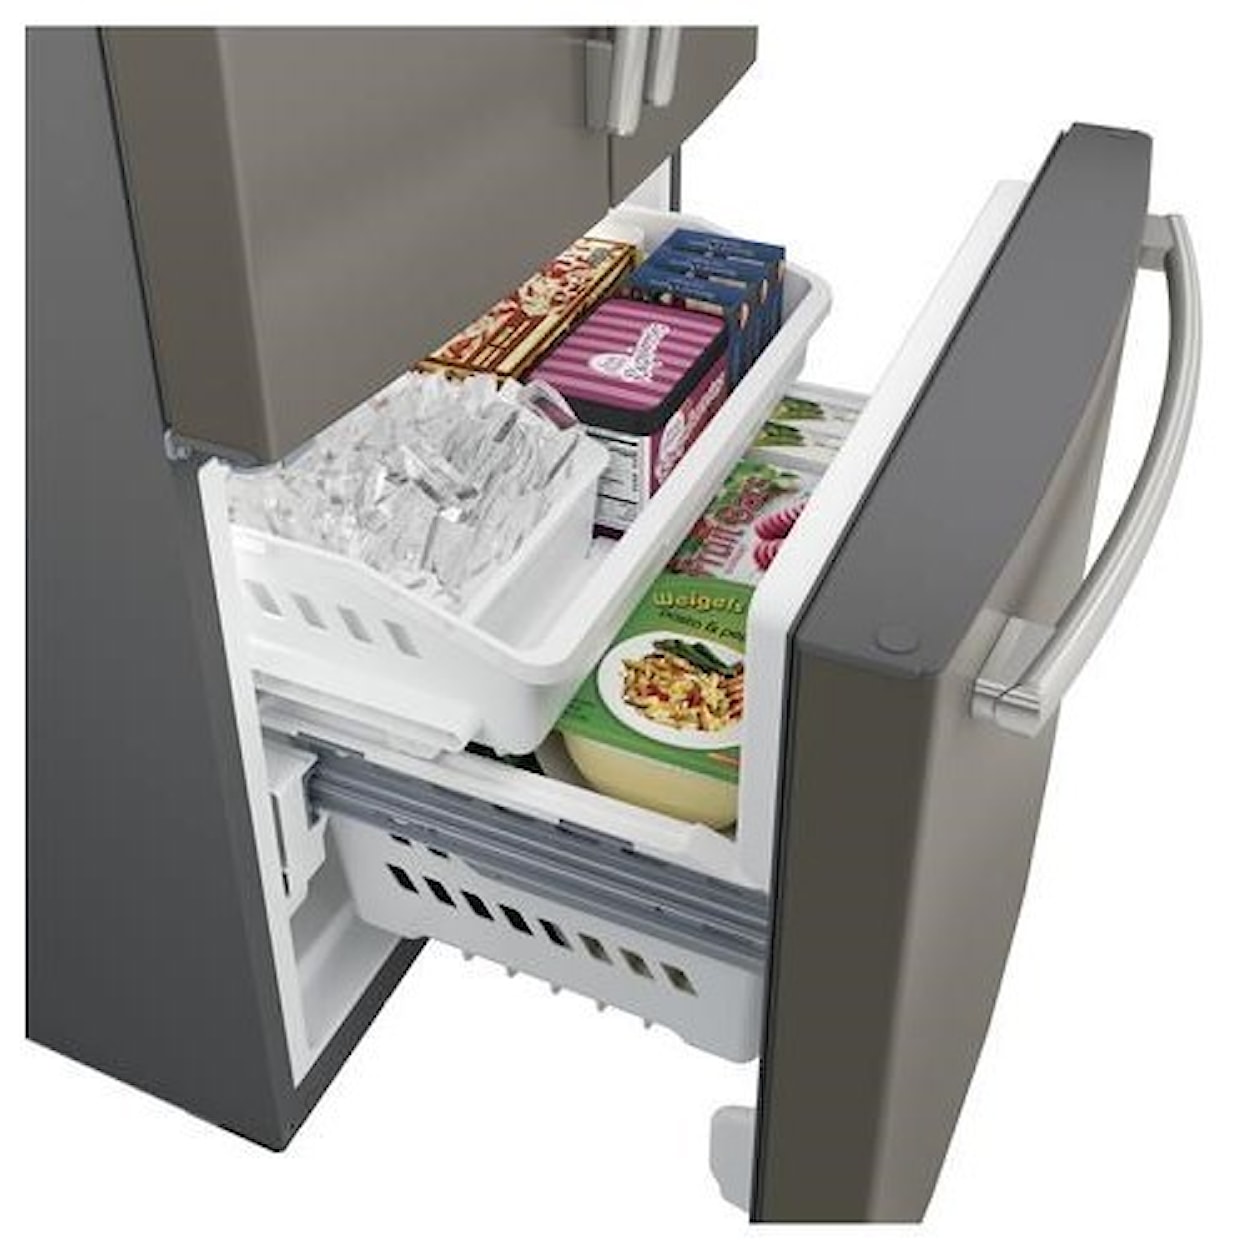 GE Appliances GE French Door Refrigerators 24.8 Cu. Ft. French-Door Refrigerator